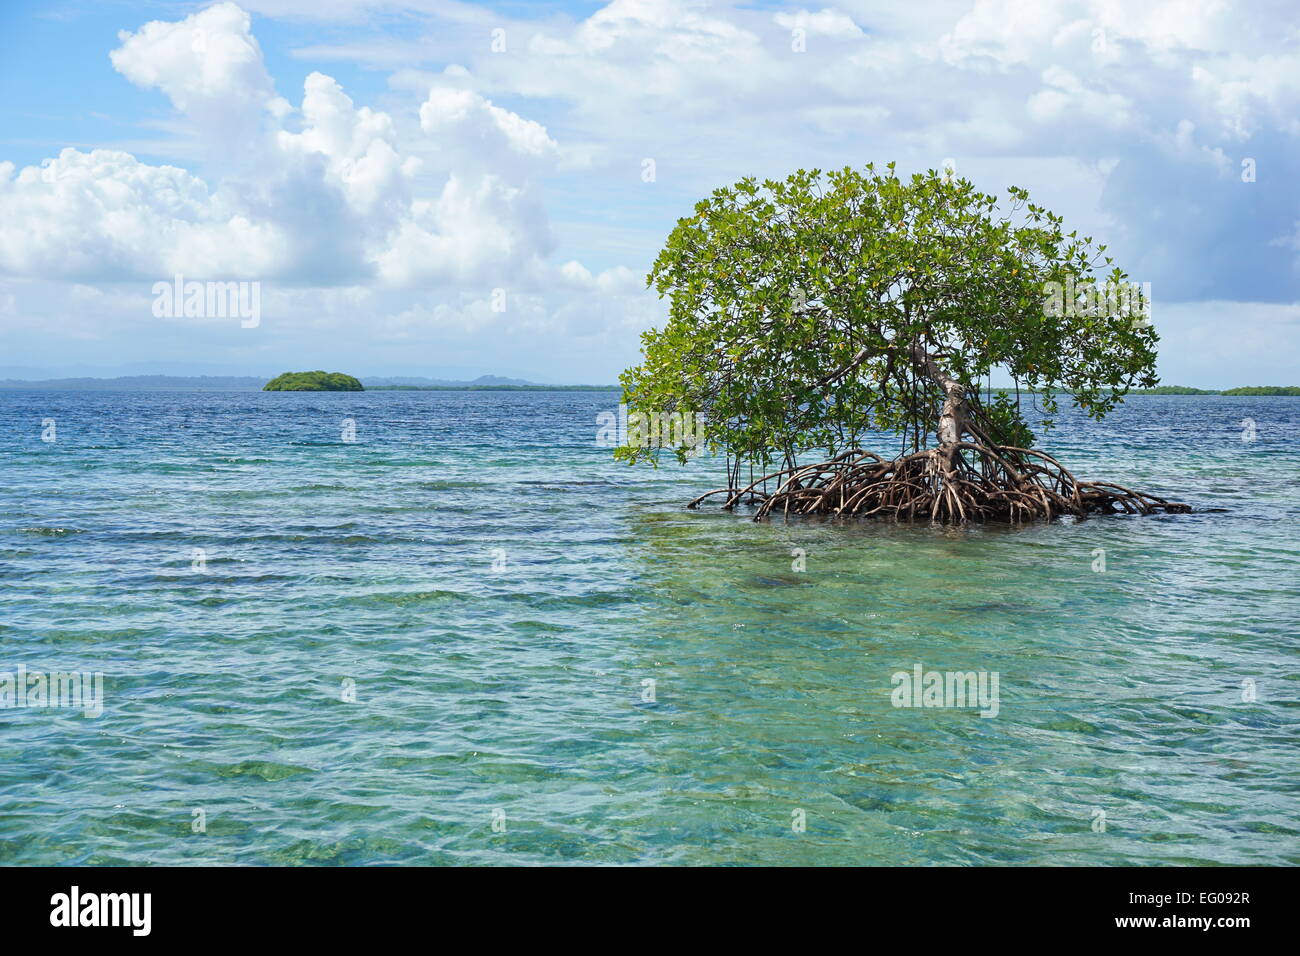 Abgeschiedenen Mangroven-Baum im Wasser mit einer Insel am Horizont, Karibik, Panama, Archipel Bocas del Toro Stockfoto